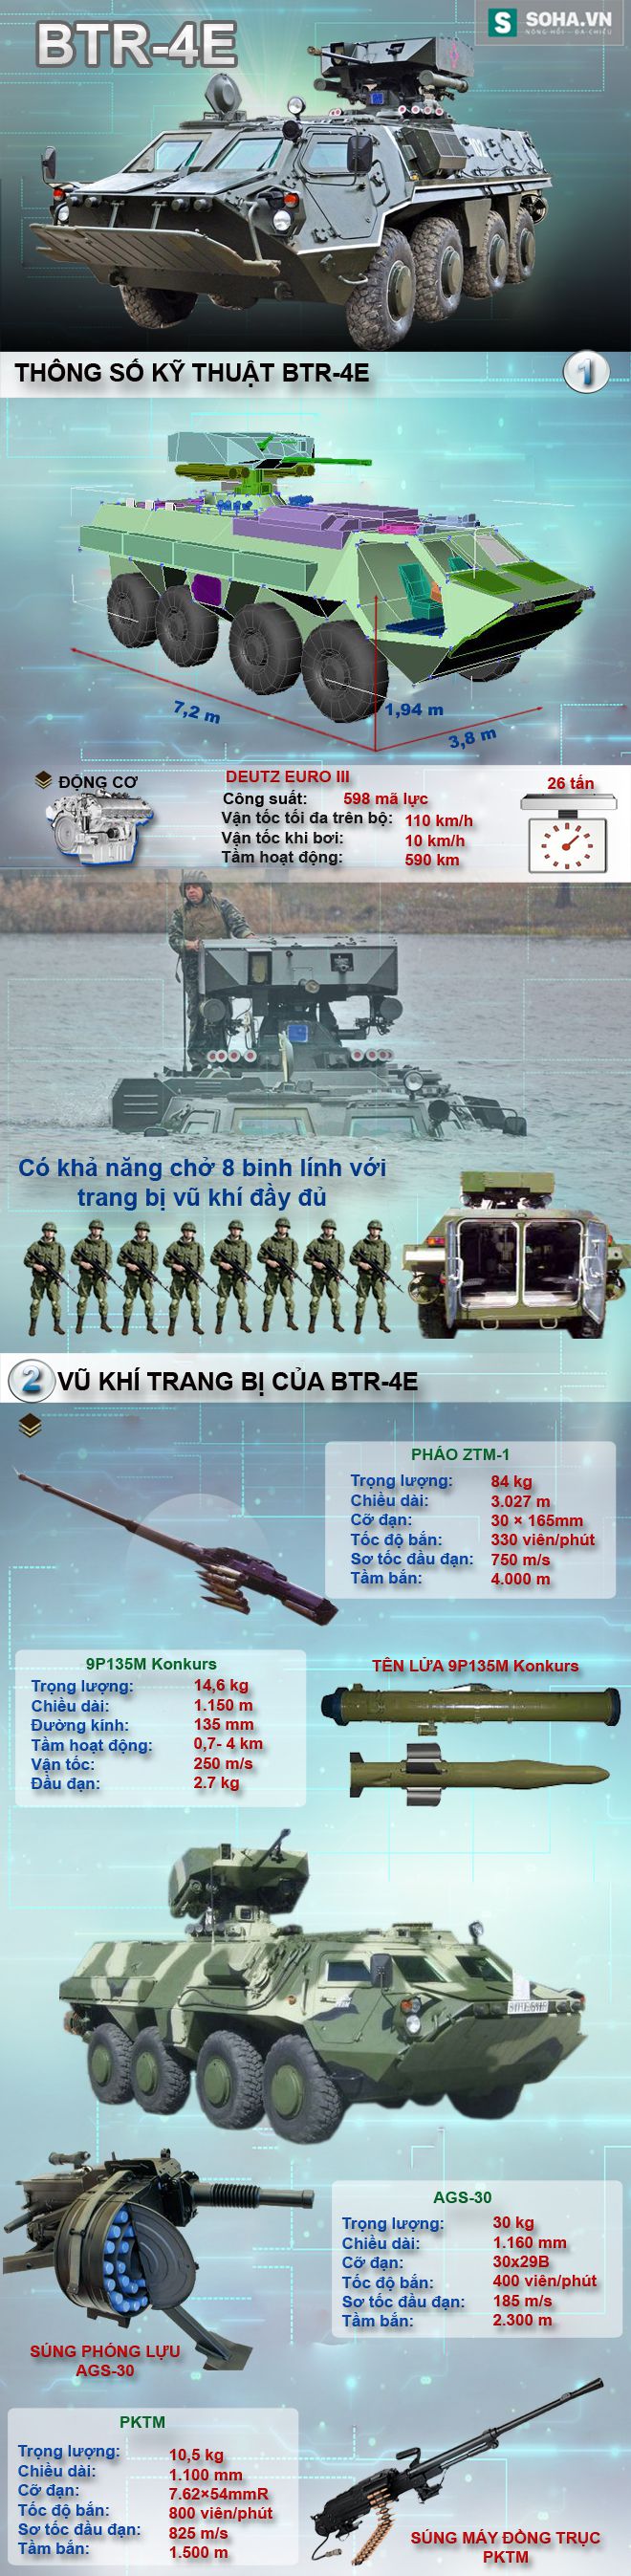 BTR-4 đã lọt vào mắt xanh của Hải quân đánh bộ Việt Nam? - Ảnh 1.